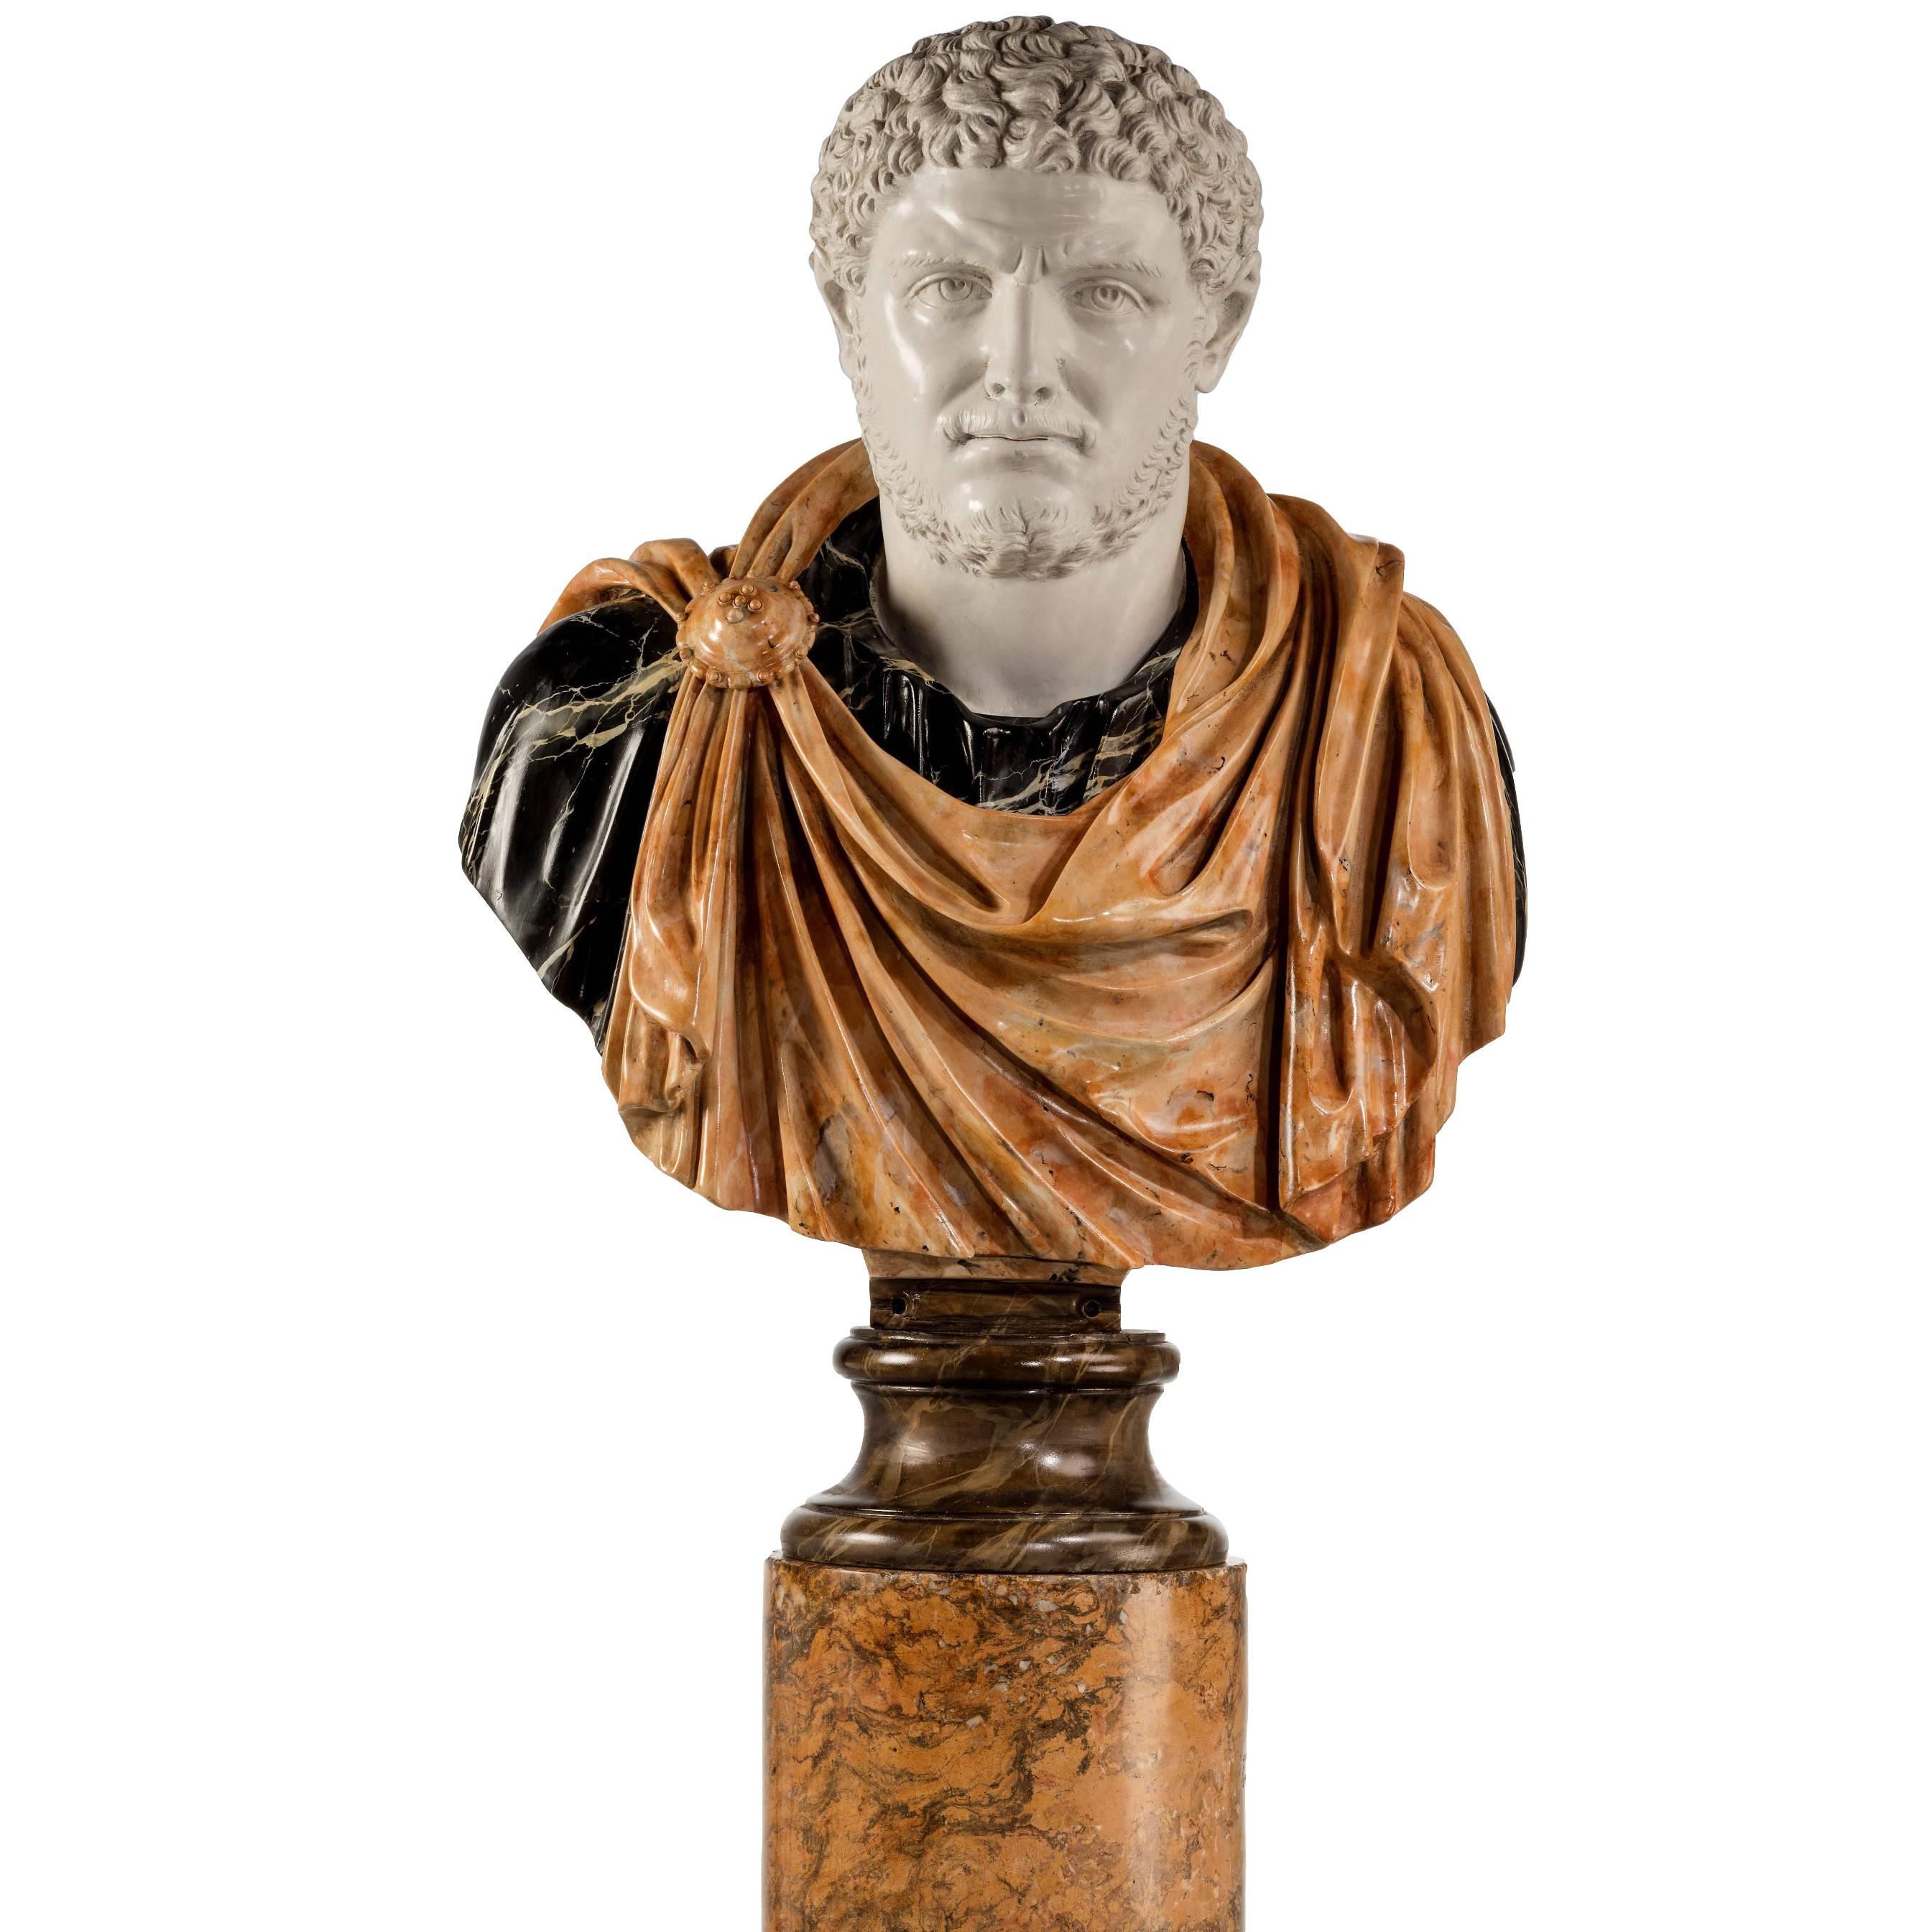 Bust of a Roman Emperor Caracalla